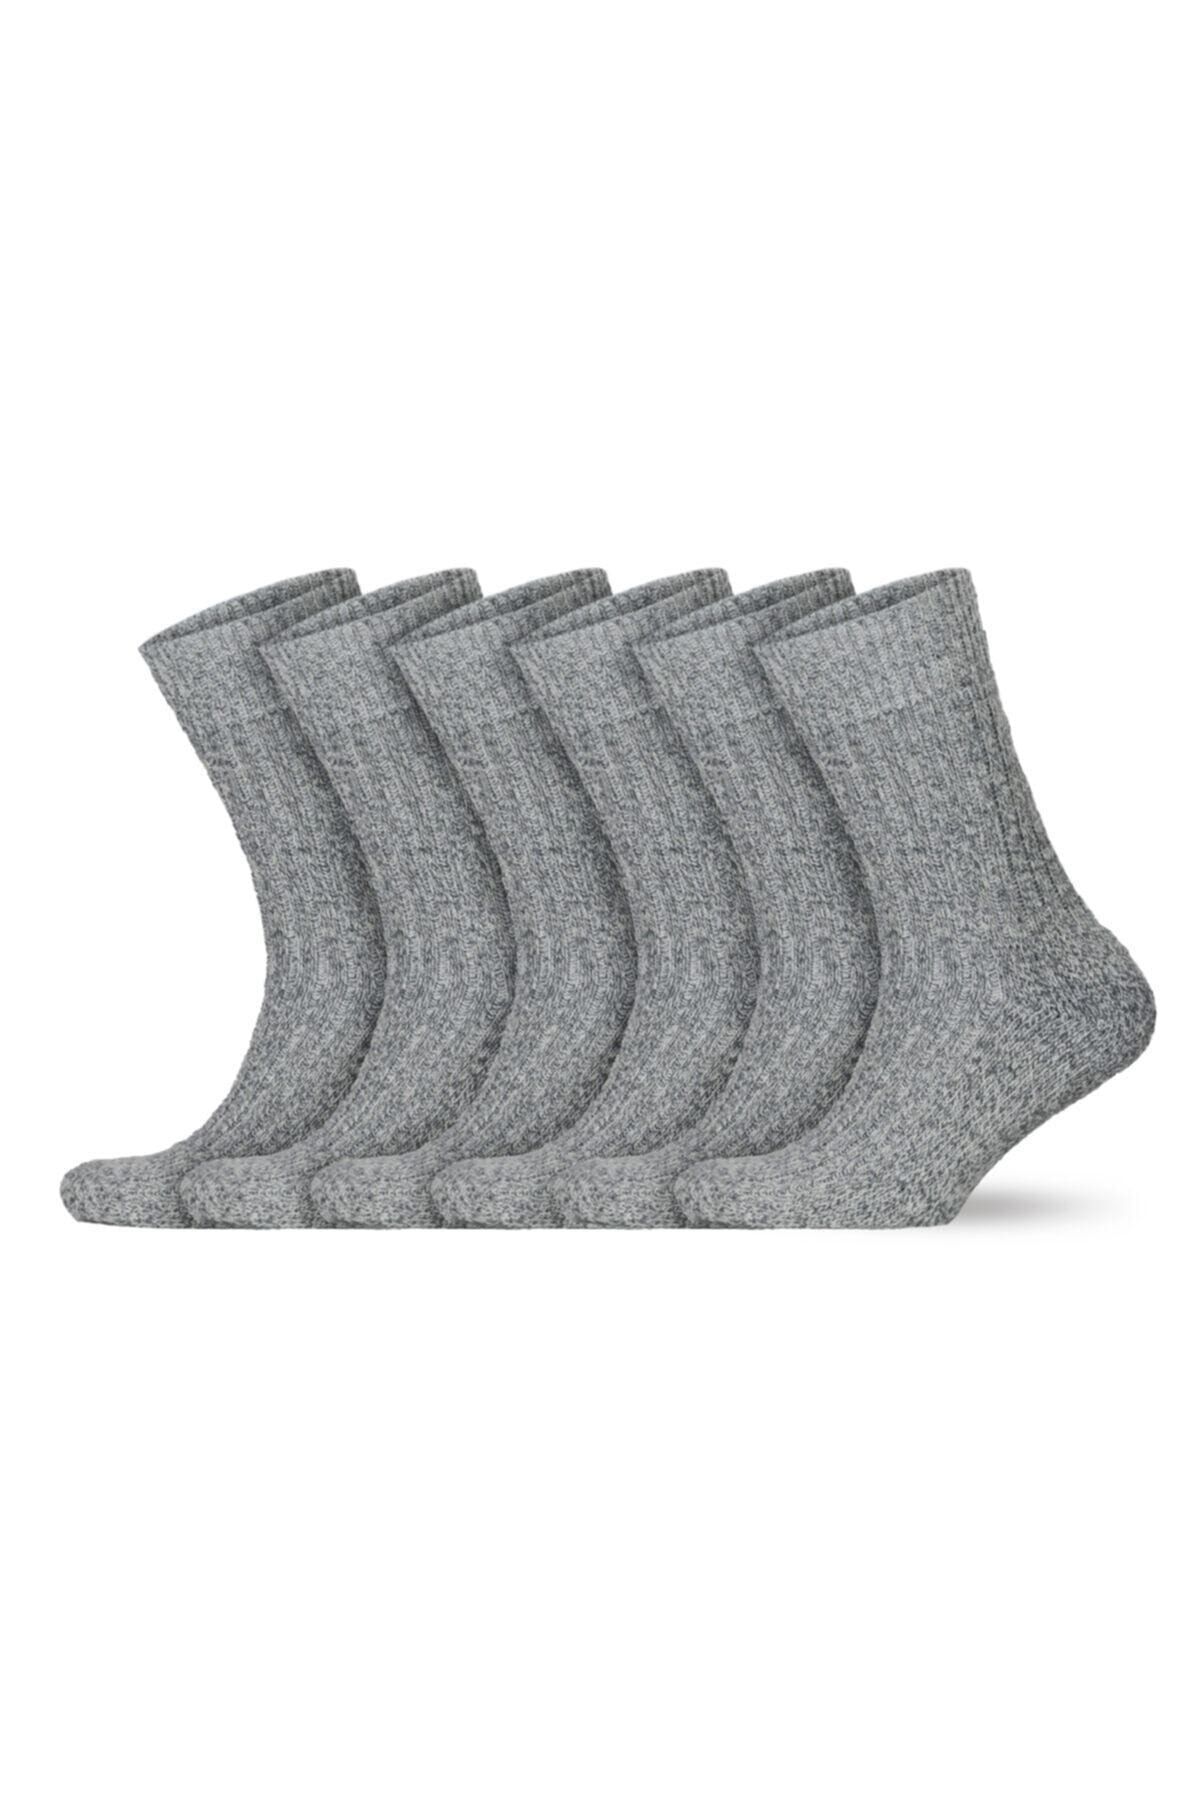 Go With Norweger Isveç Tipi Tabanaltı Havlulu Yünlü Soft Çorap 6 Çift (6001)